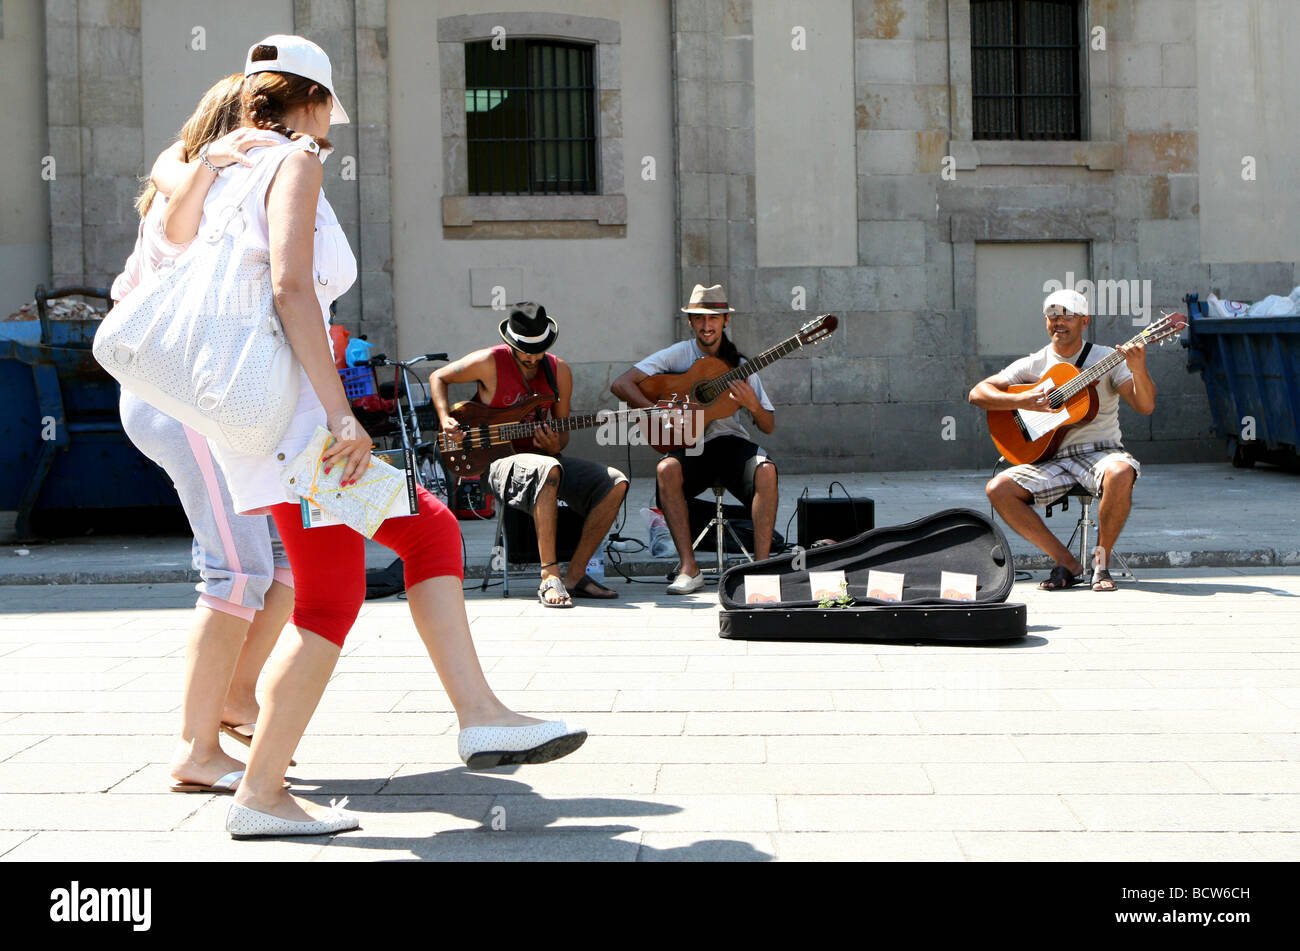 Las Guitarras Nocturnas, gruppo Argentinan musicista di strada in Plaza de la Catedral, Barcellona, Spagna Foto Stock